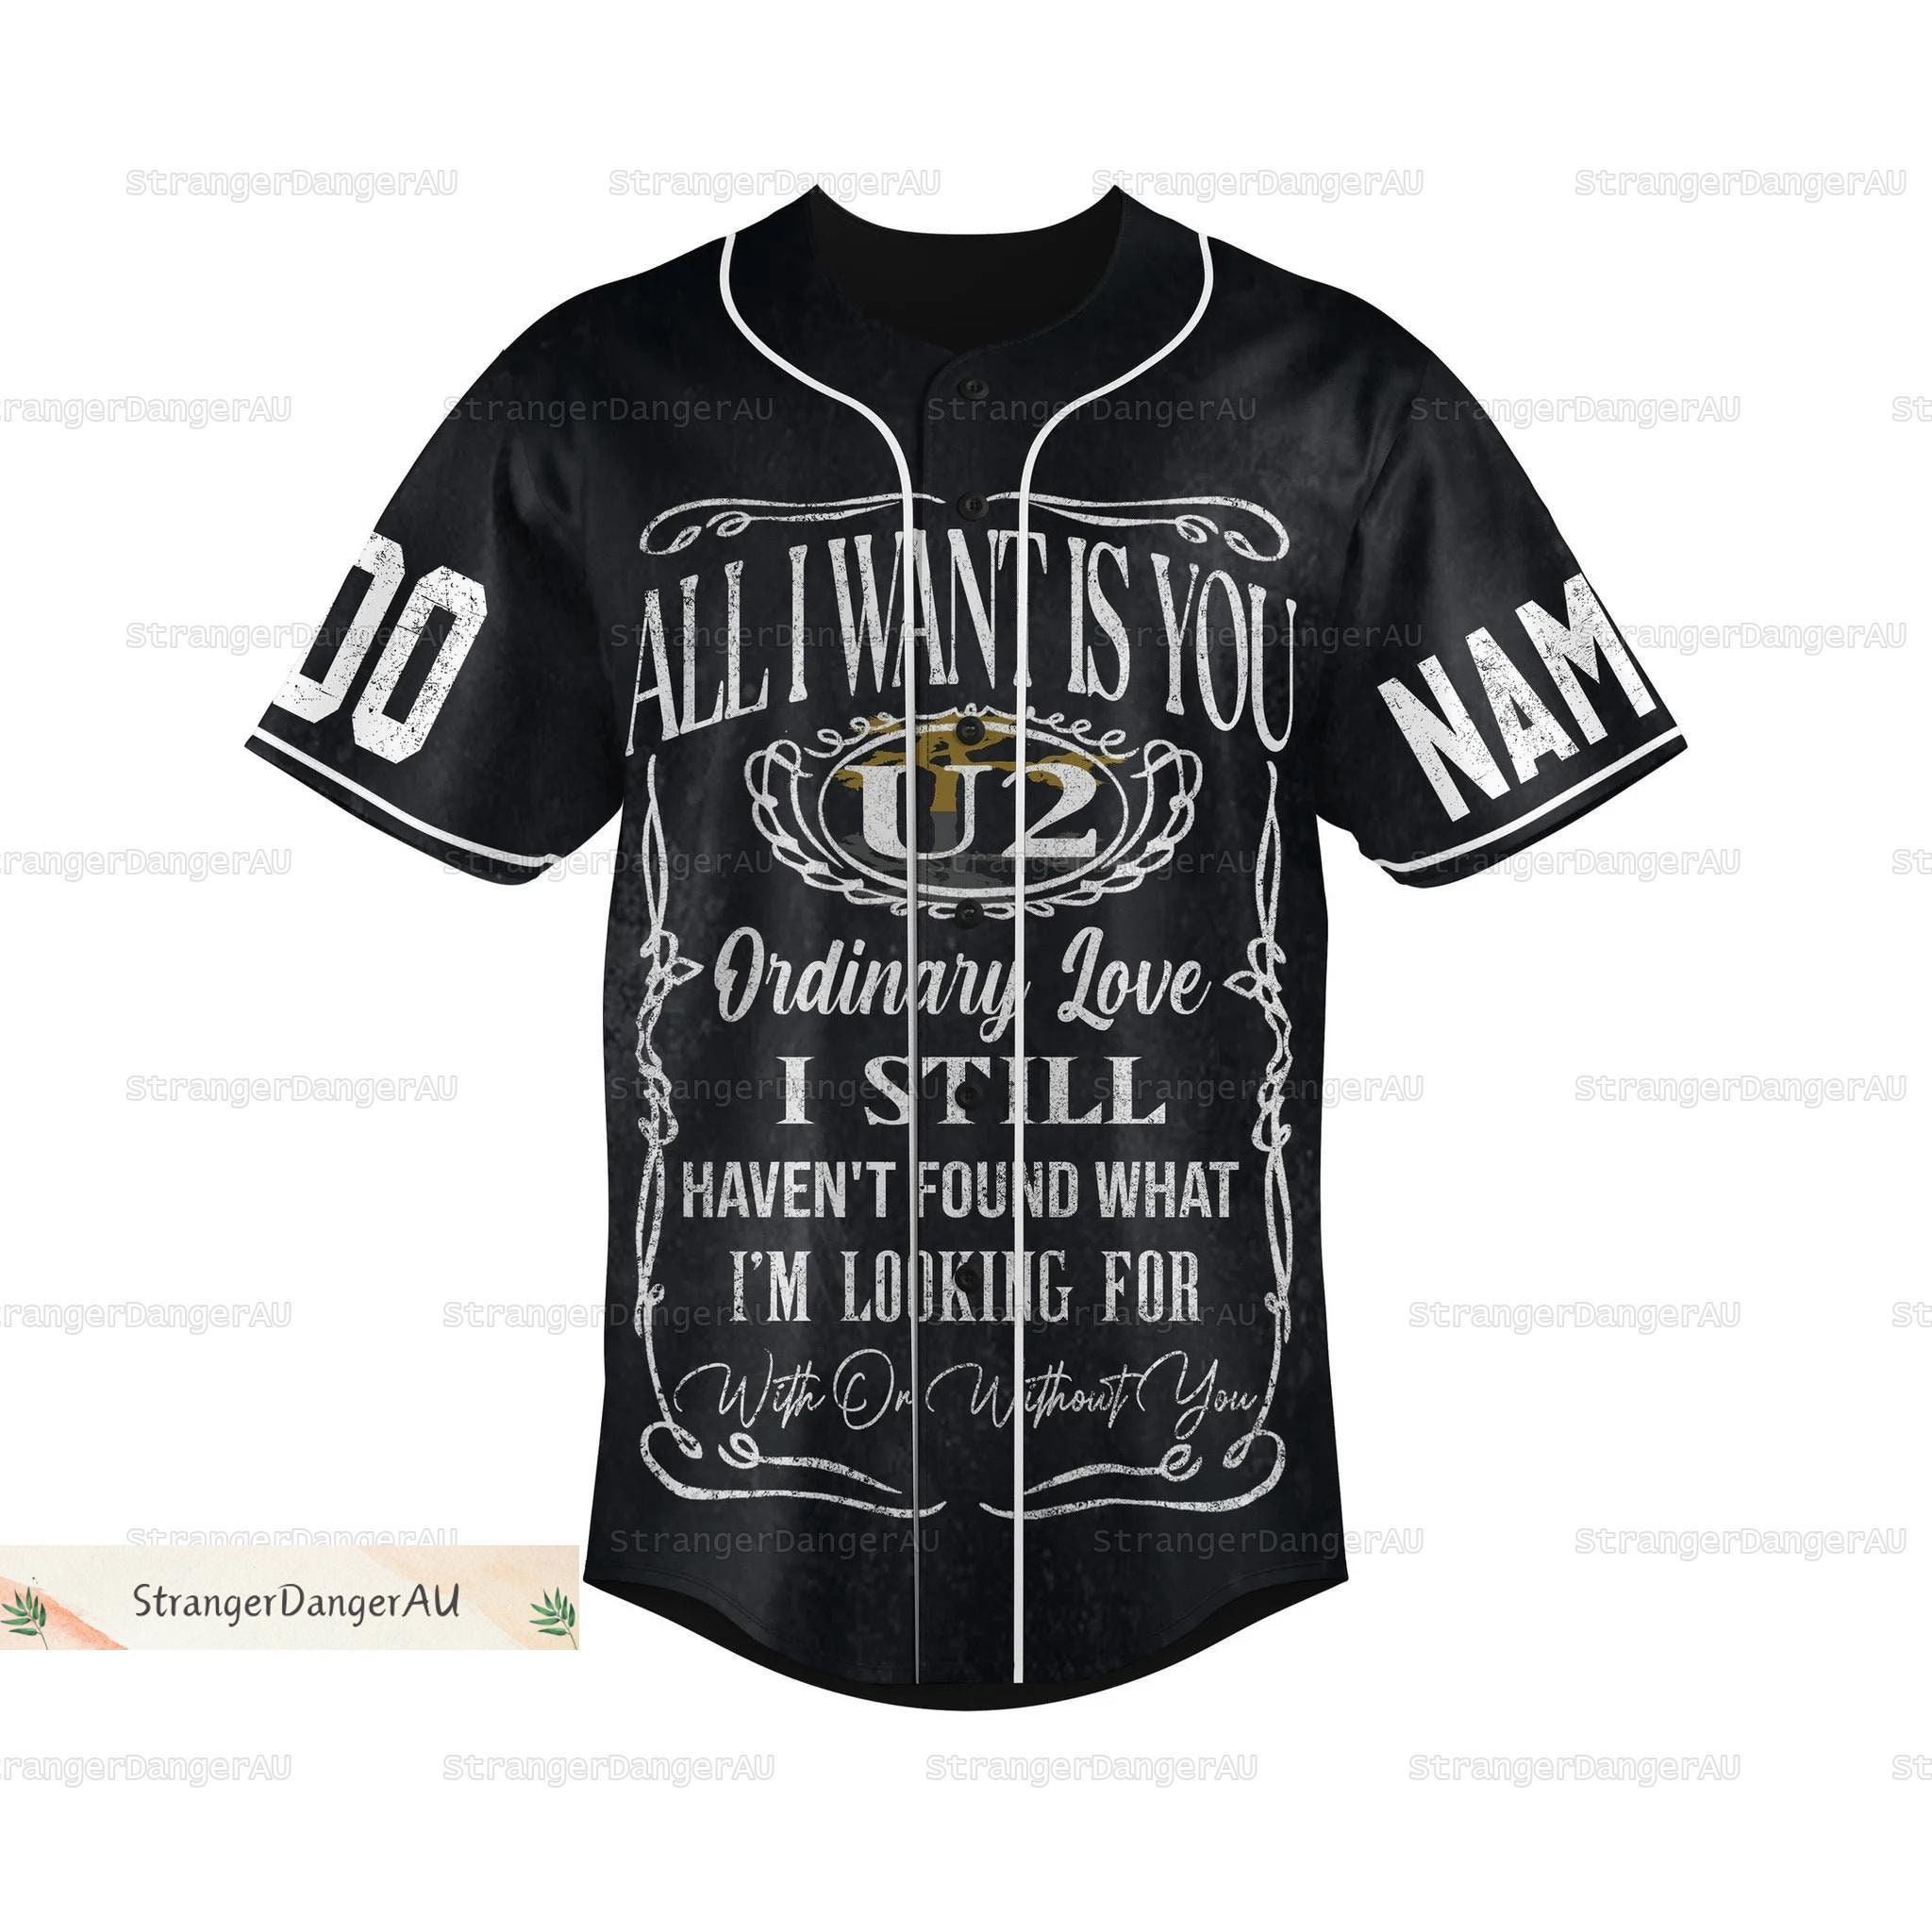 U2 Band Jersey, U2 Tour Baseball Jersey, U2 All I Want Is You Baseball Shirt